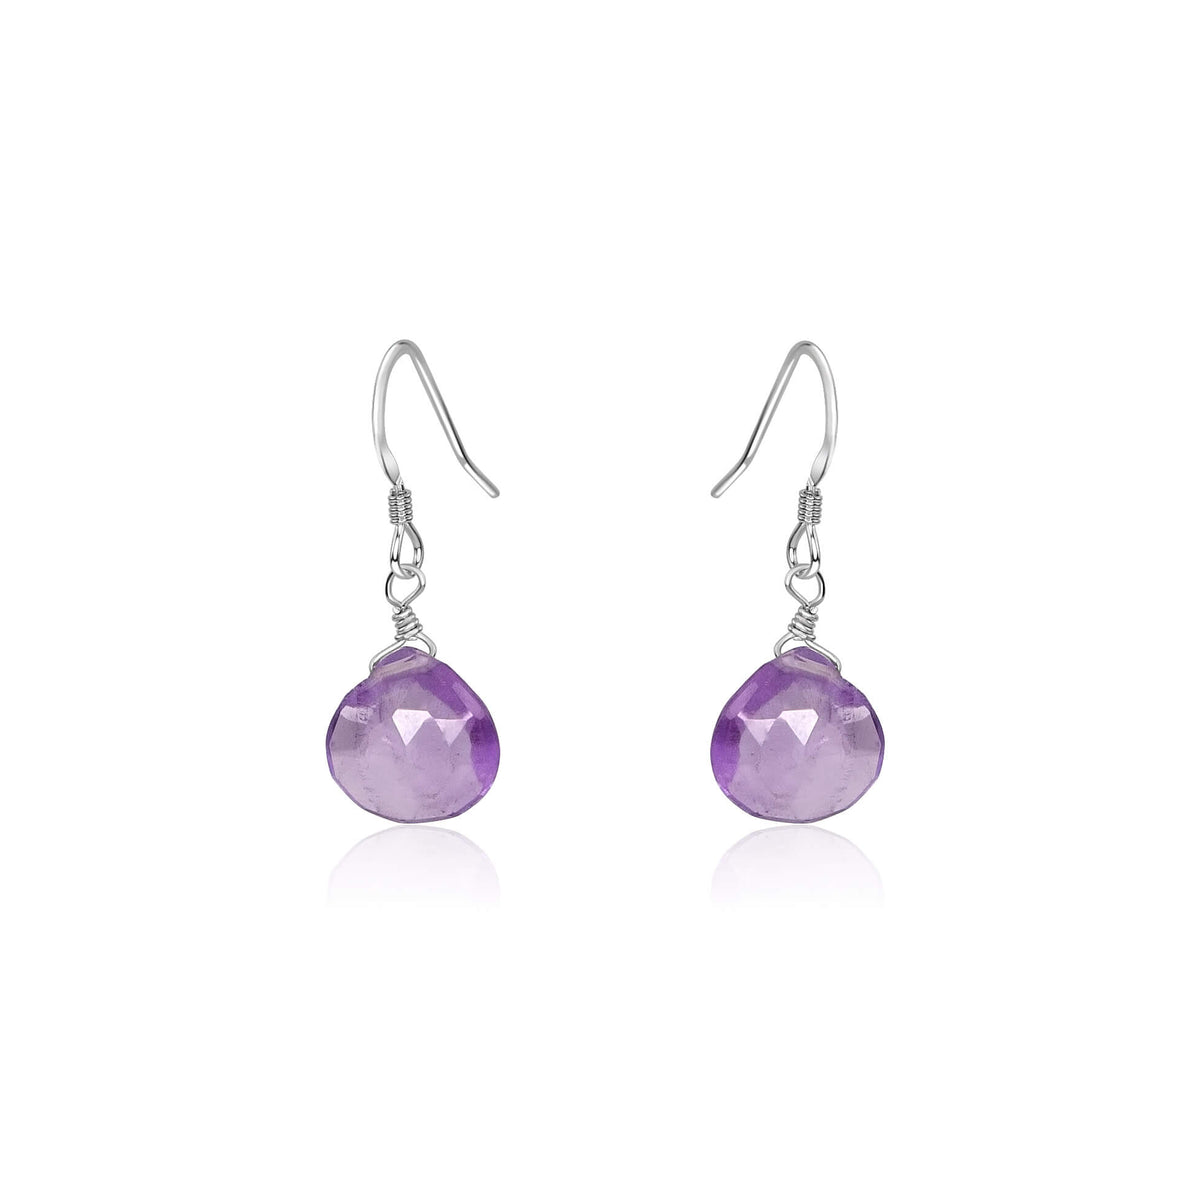 Teardrop Earrings - Lavender Amethyst - Sterling Silver - Luna Tide Handmade Jewellery